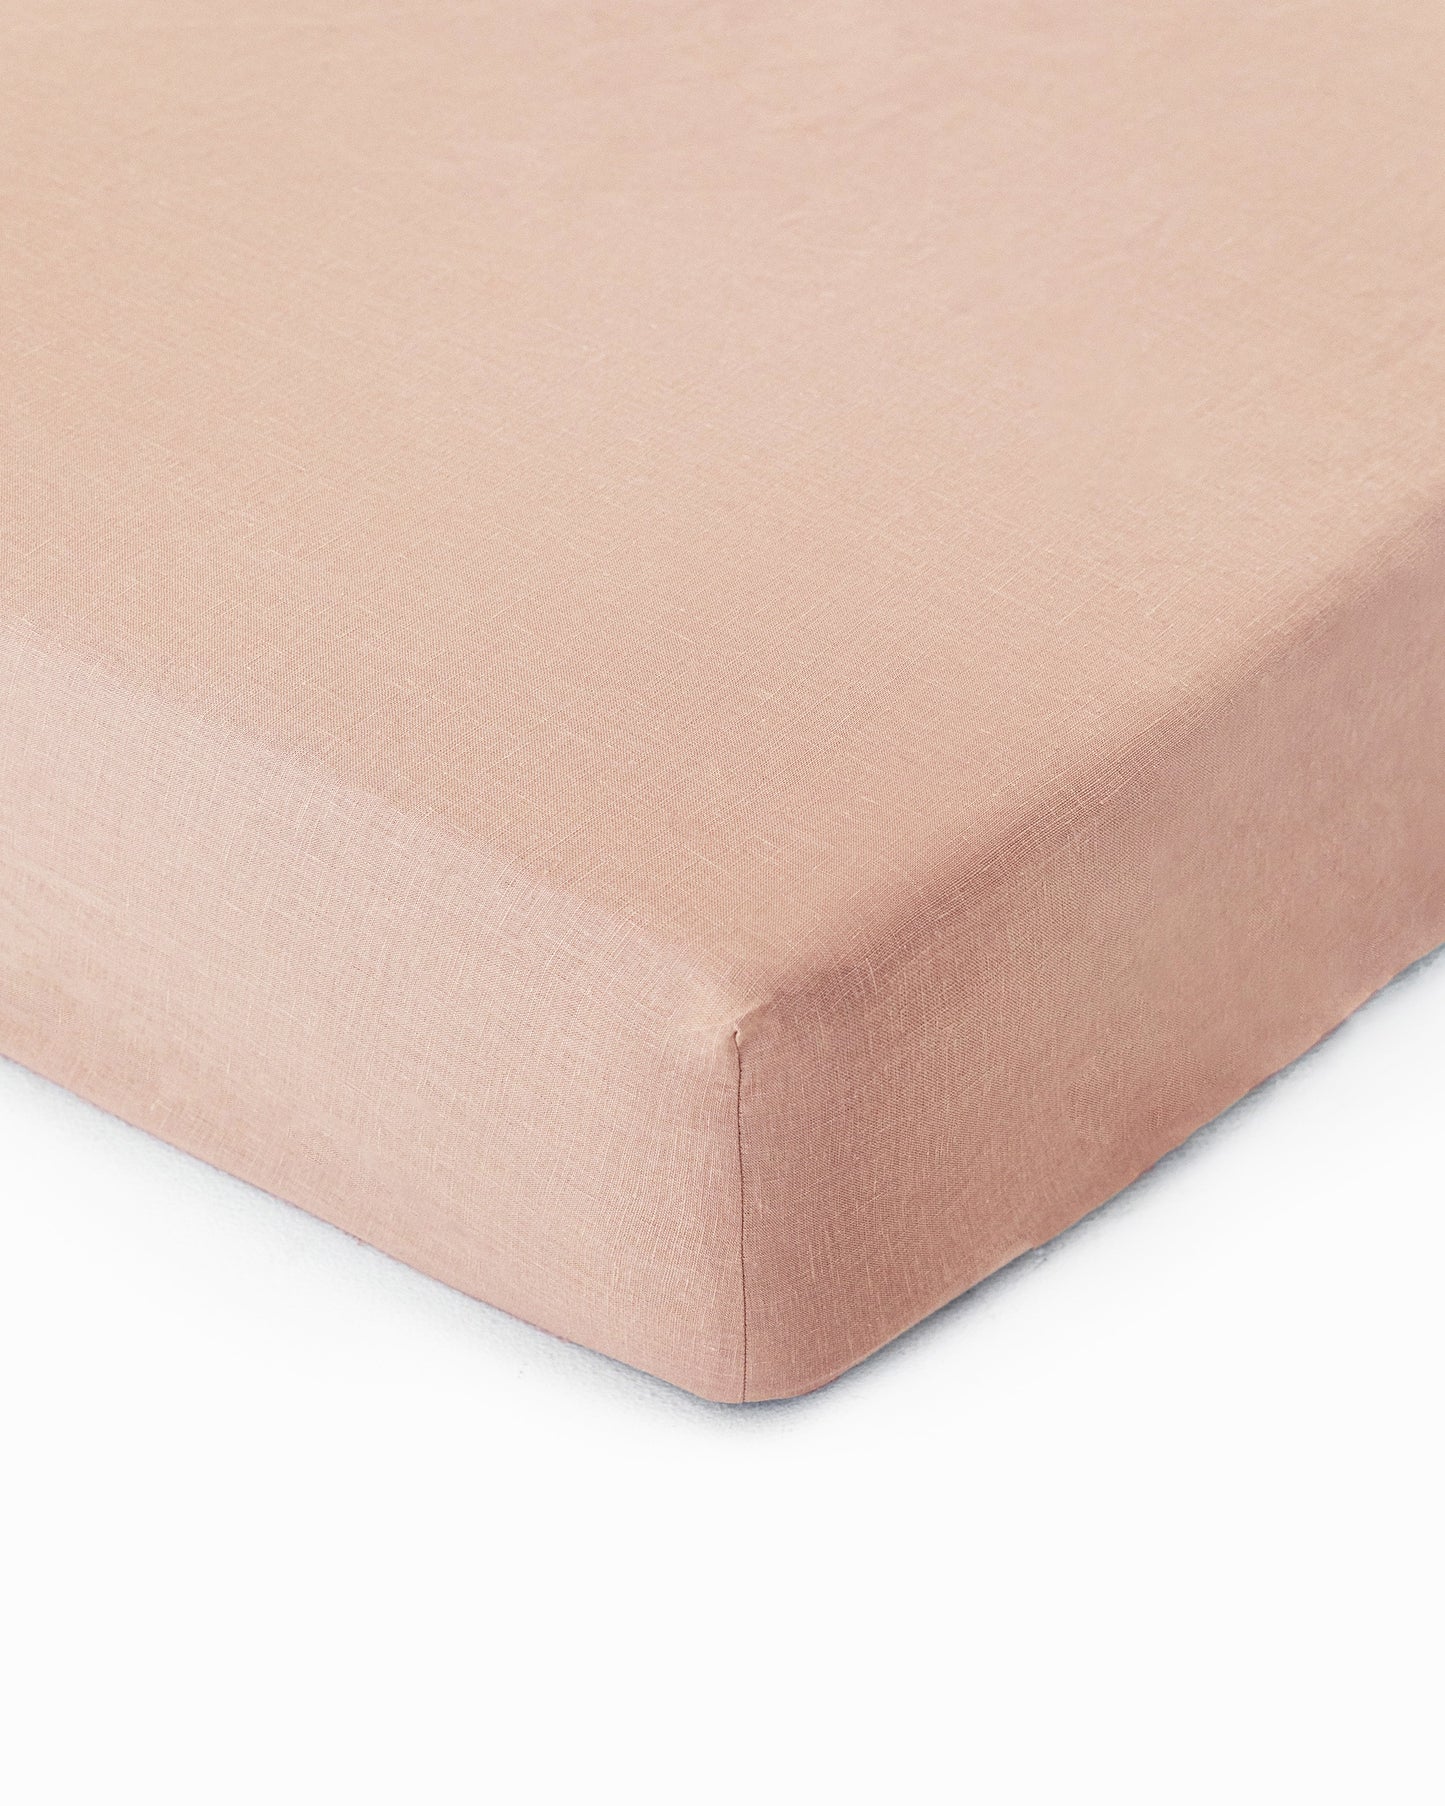 Peach linen fitted sheet - MagicLinen